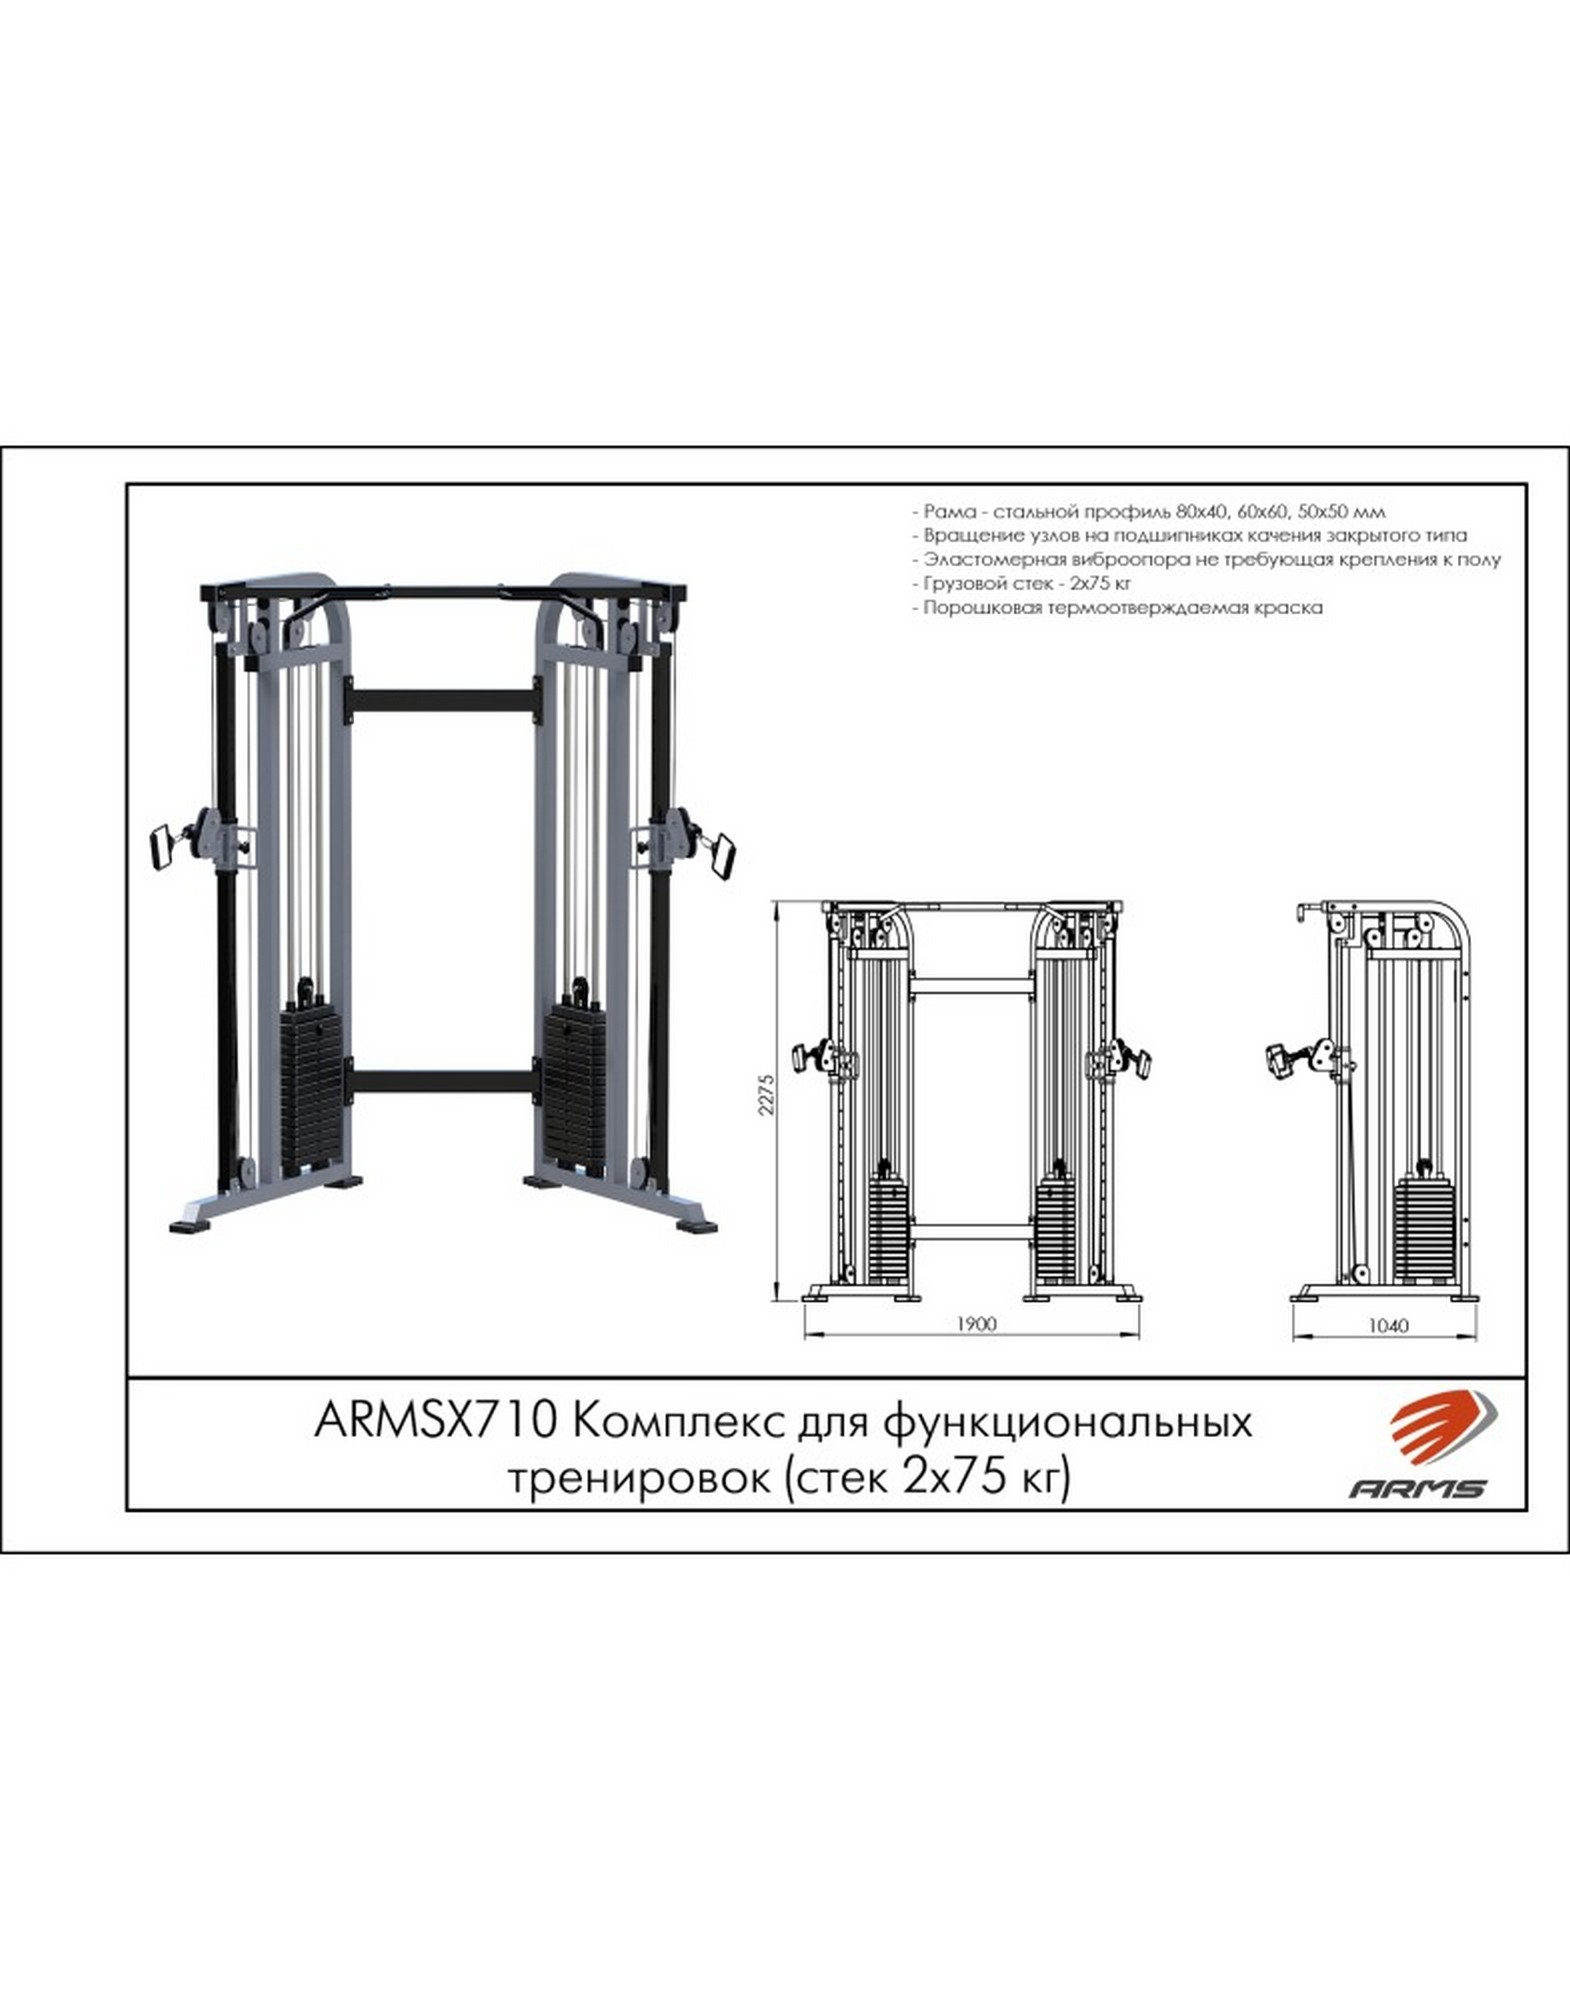 Комплекс для функциональных тренировок ARMS ARMSX710 1570_2000